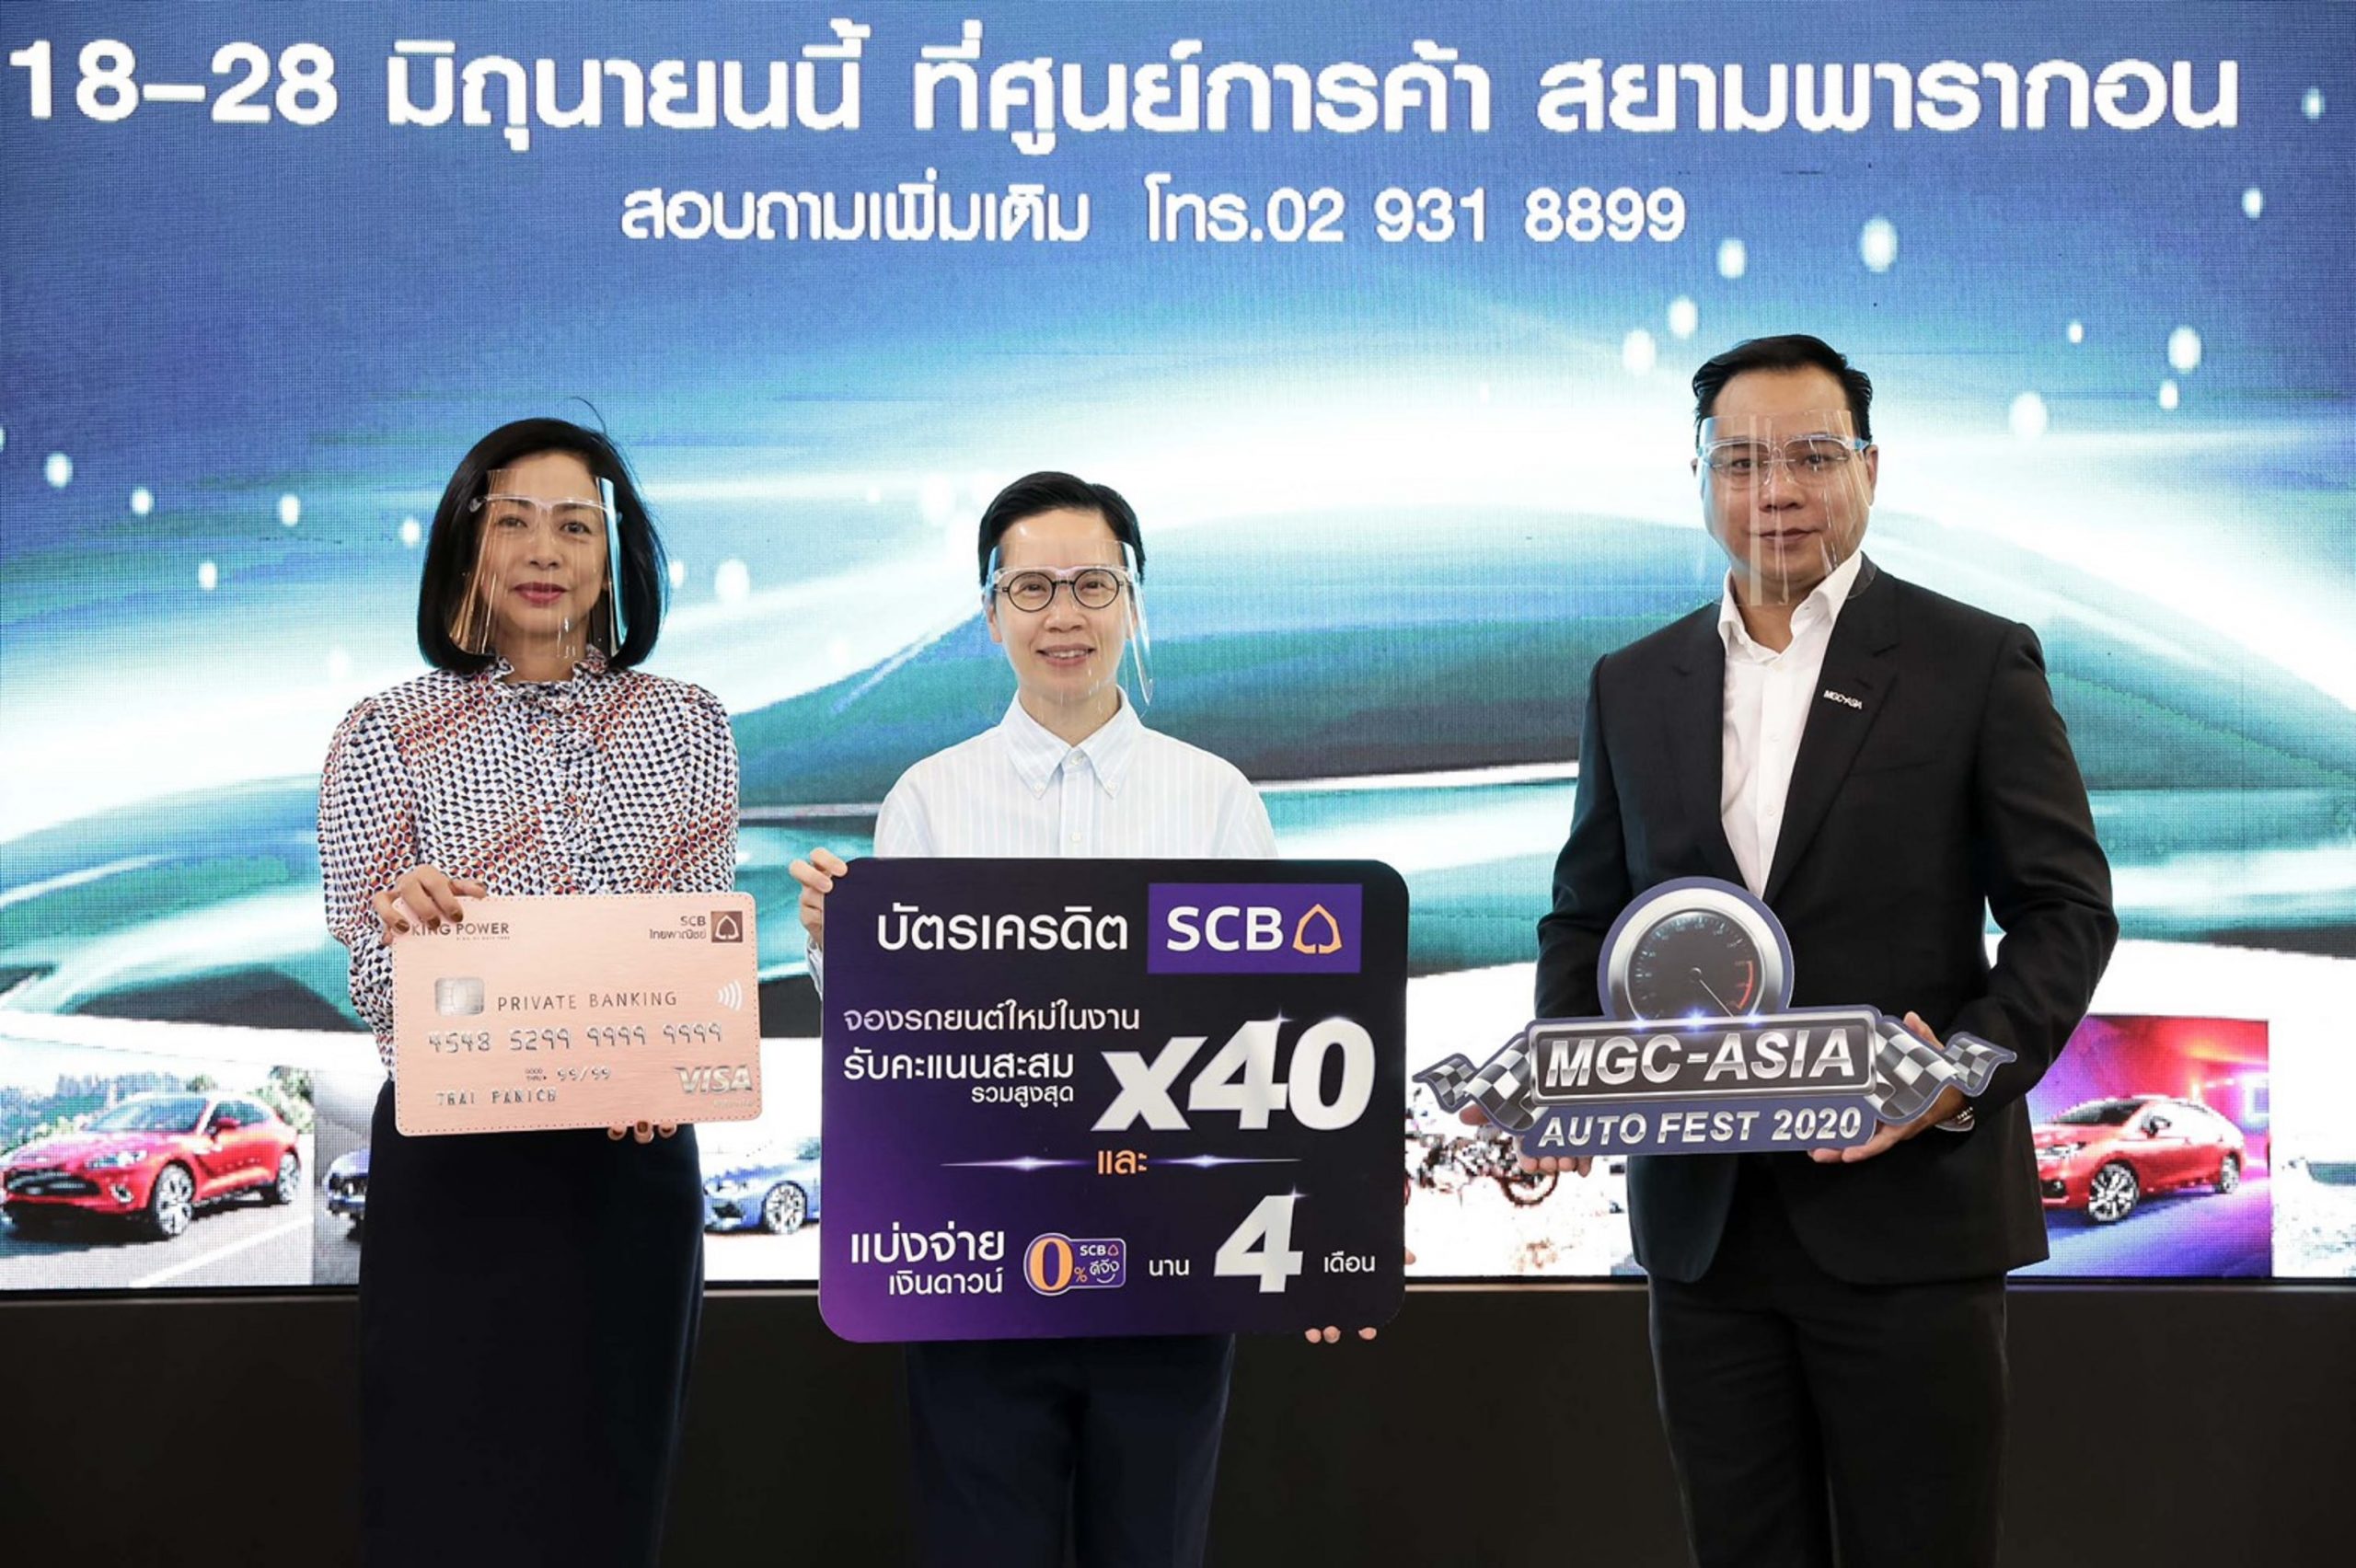 บัตรเครดิตไทยพาณิชย์มอบเอกสิทธิ์สุดพิเศษสำหรับลูกค้า เมื่อจองซื้อรถในงาน MGC AUTO FEST 2020